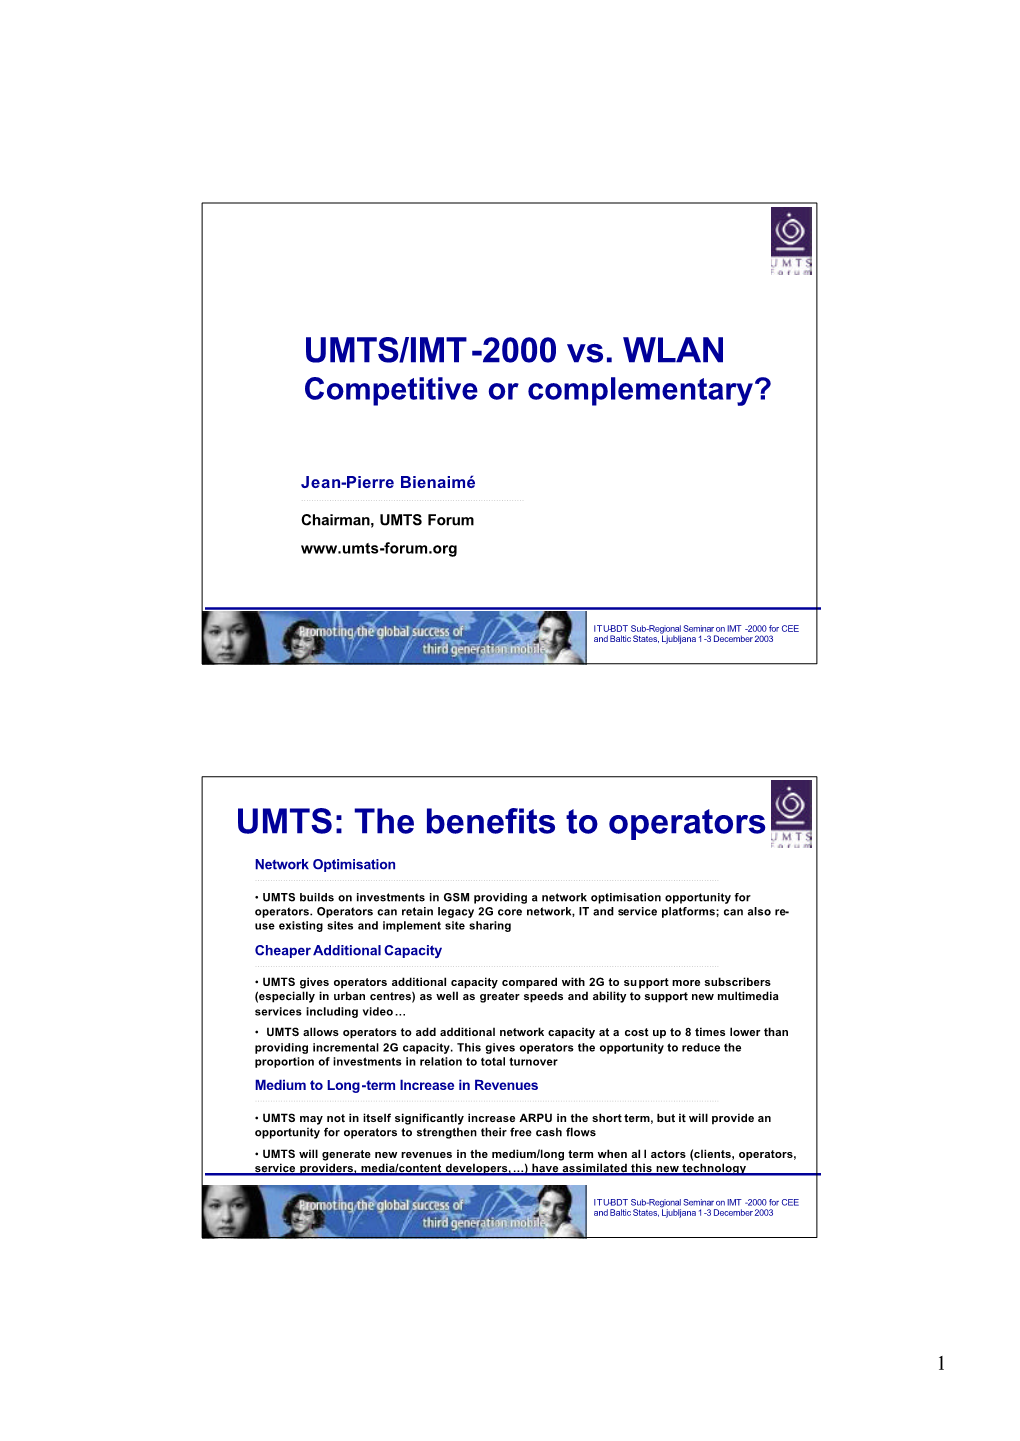 UMTS/IMT-2000 Vs. WLAN UMTS